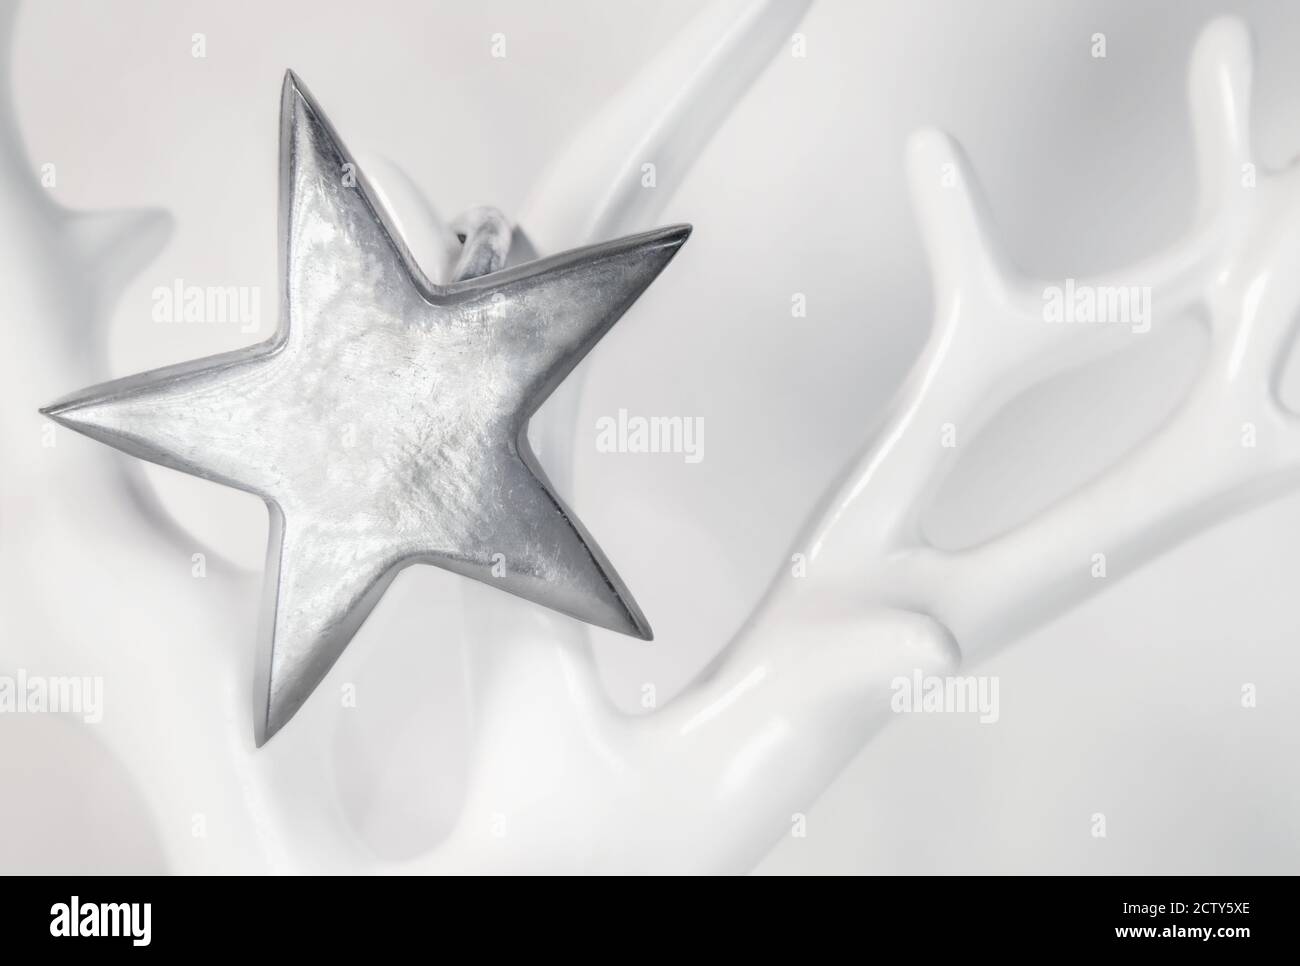 Einzelner silberner Stern auf weichem weißem Hintergrund. Nahaufnahme. Der Sterling Silber Stern hängt auf einem Porzellanbaum oder Geweih. Stockfoto